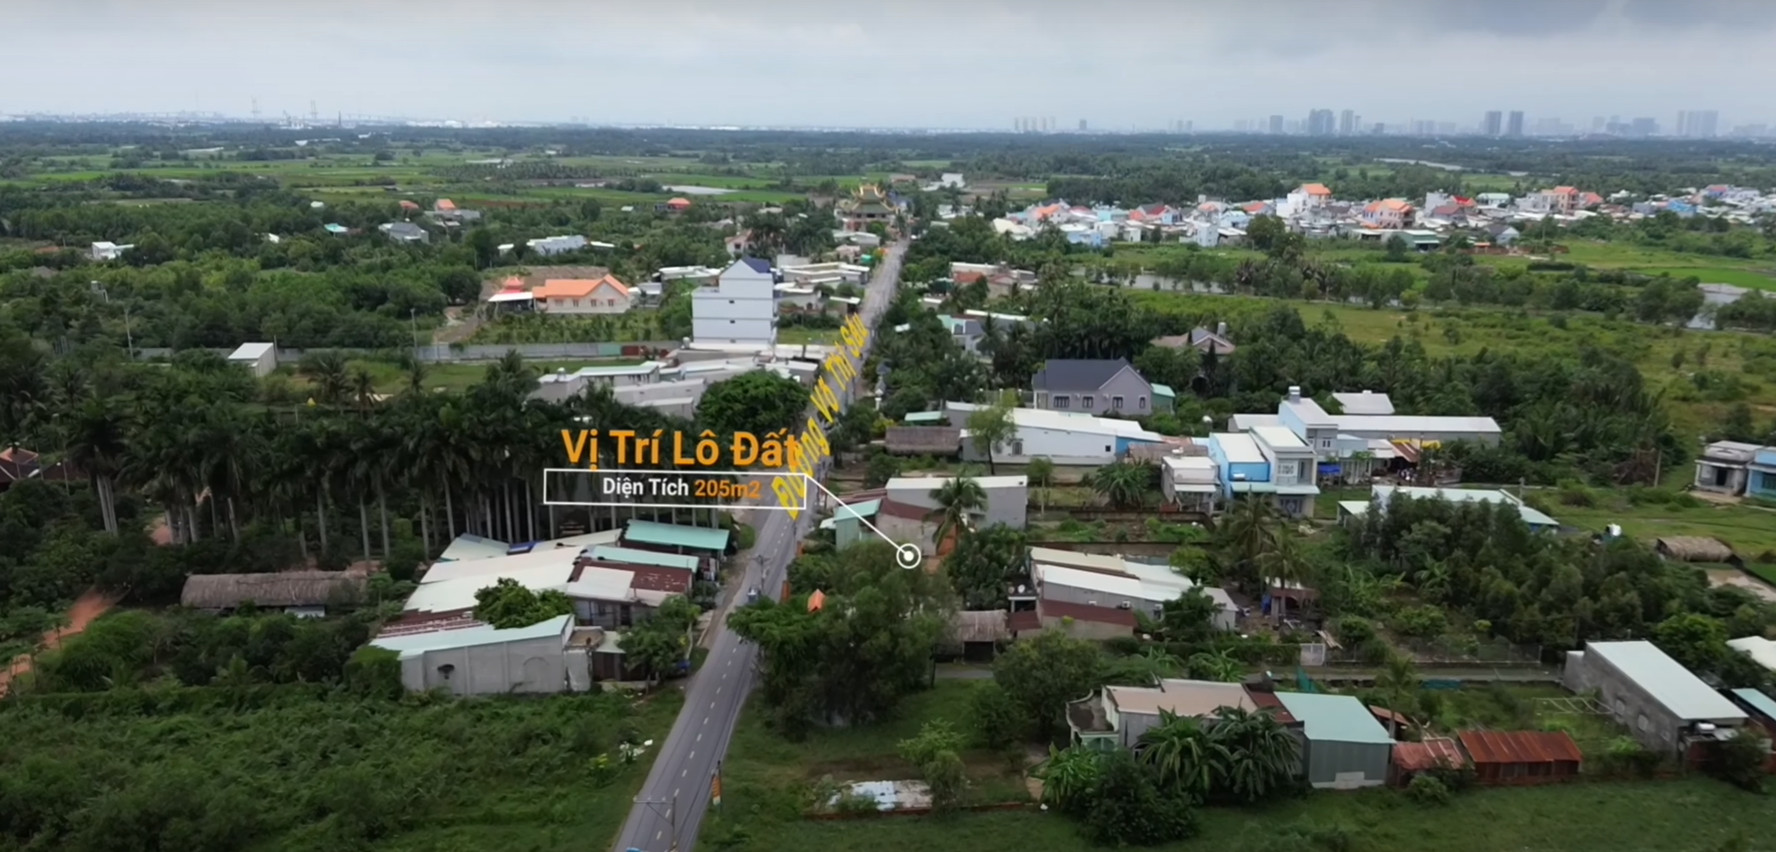 Bán lô đất mặt tiền đường Võ Thị Sáu Nhơn Trạch giá tốt diện tích 205m2 có thổ cư